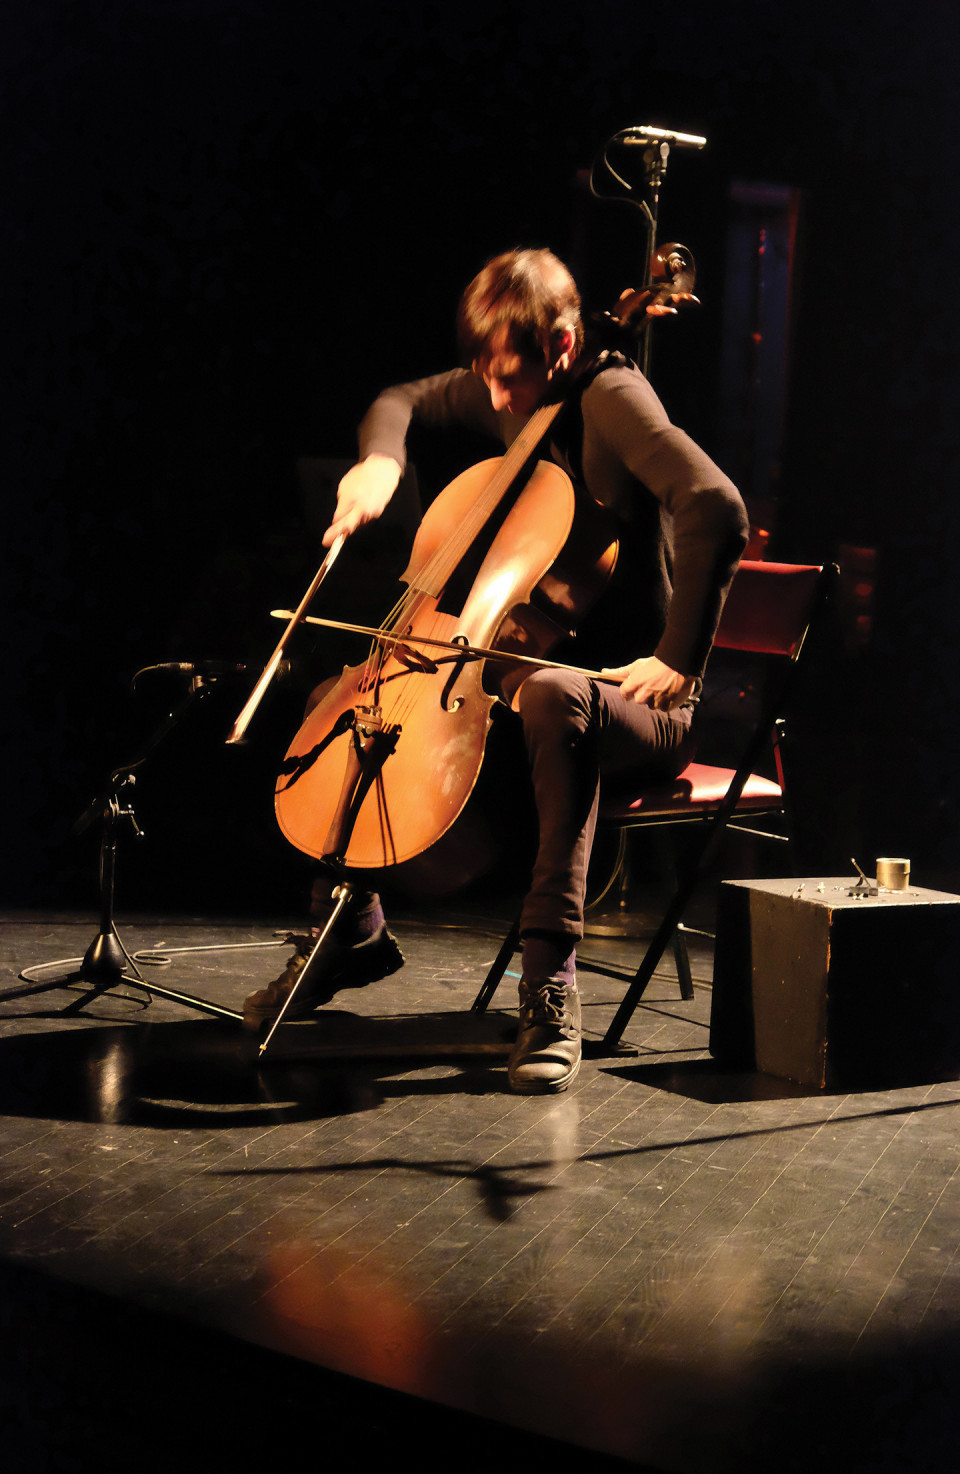 Rémy Bélanger de Beauport in concert at DAME: Archive / mémoire [Photograph: Céline Côté, Montréal (Québec), February 16, 2017]